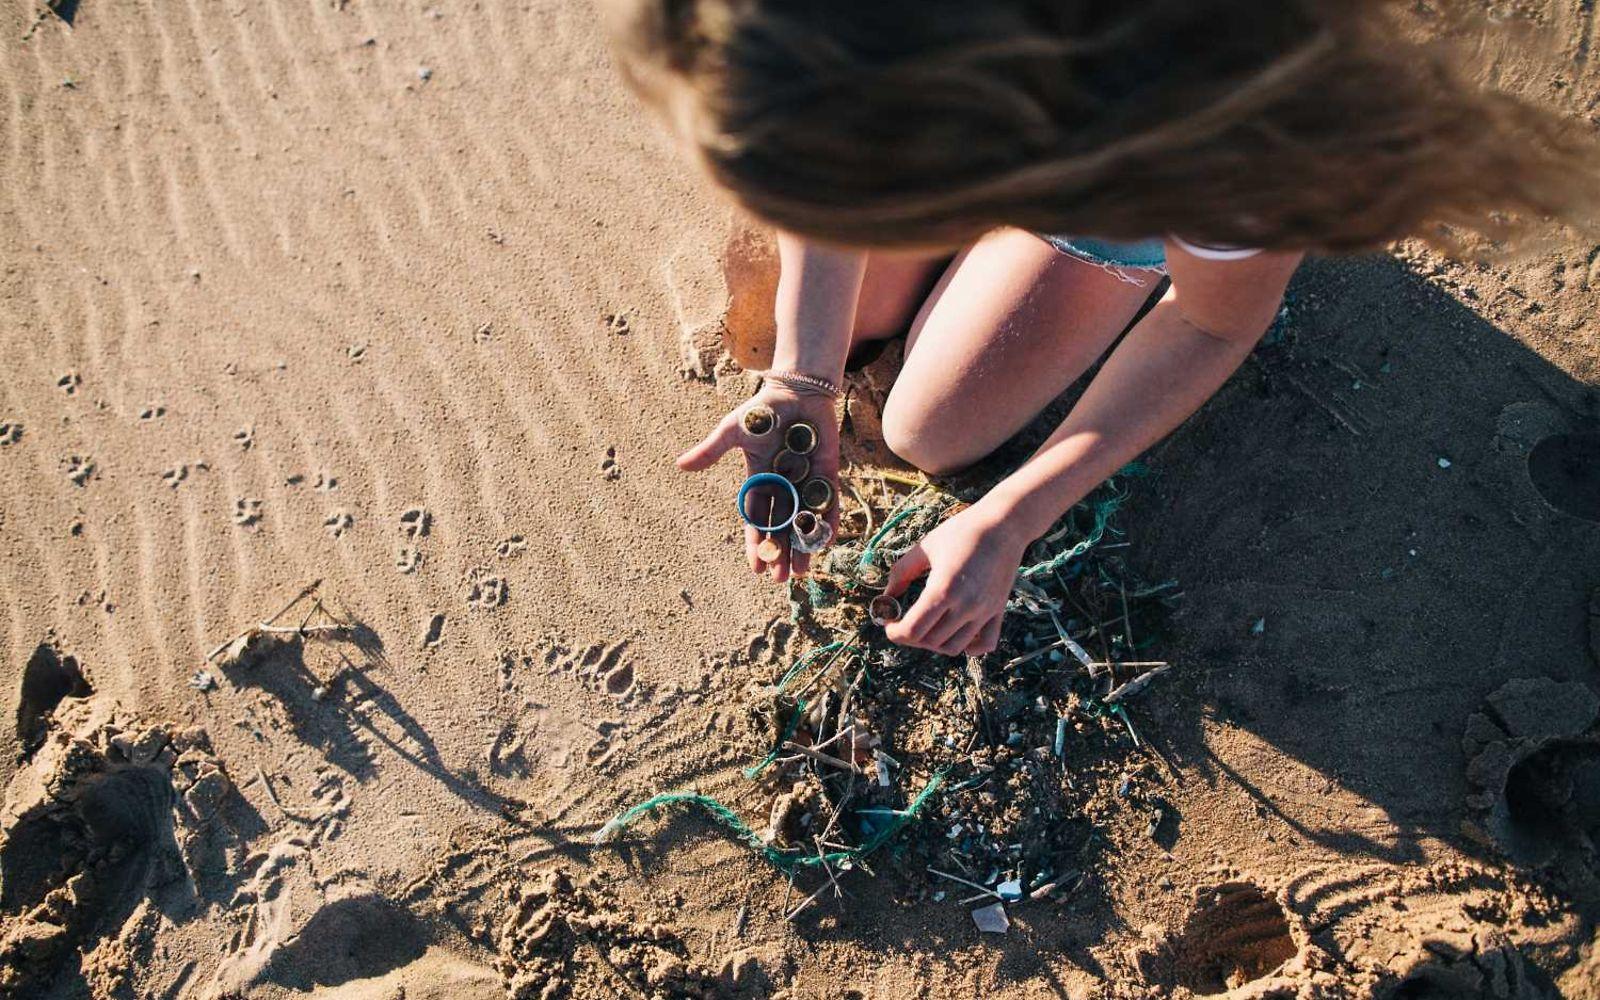 Mikroplastik: Junge Frau sammelt am Strand Kunststoffmüll auf.